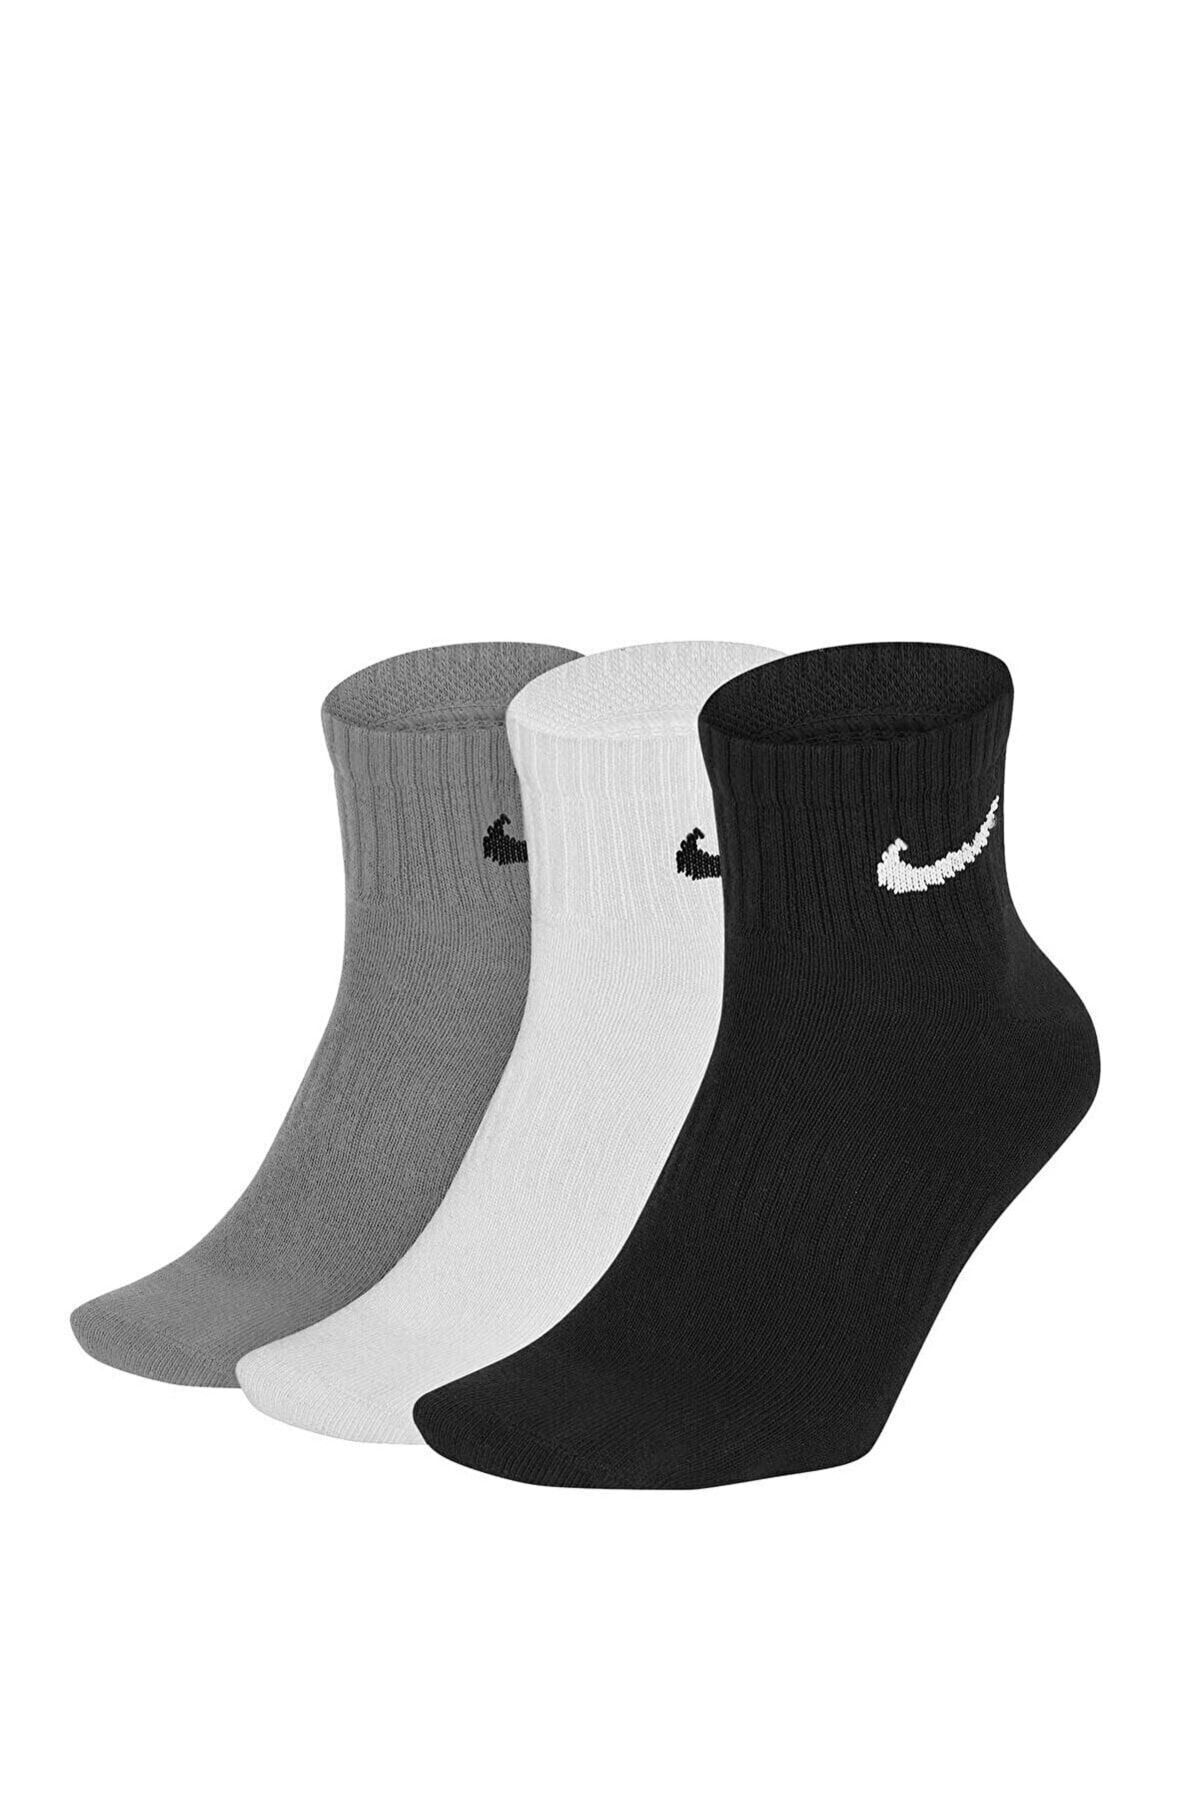 Nike Spor Çorap 3 Renk Sx7677-901